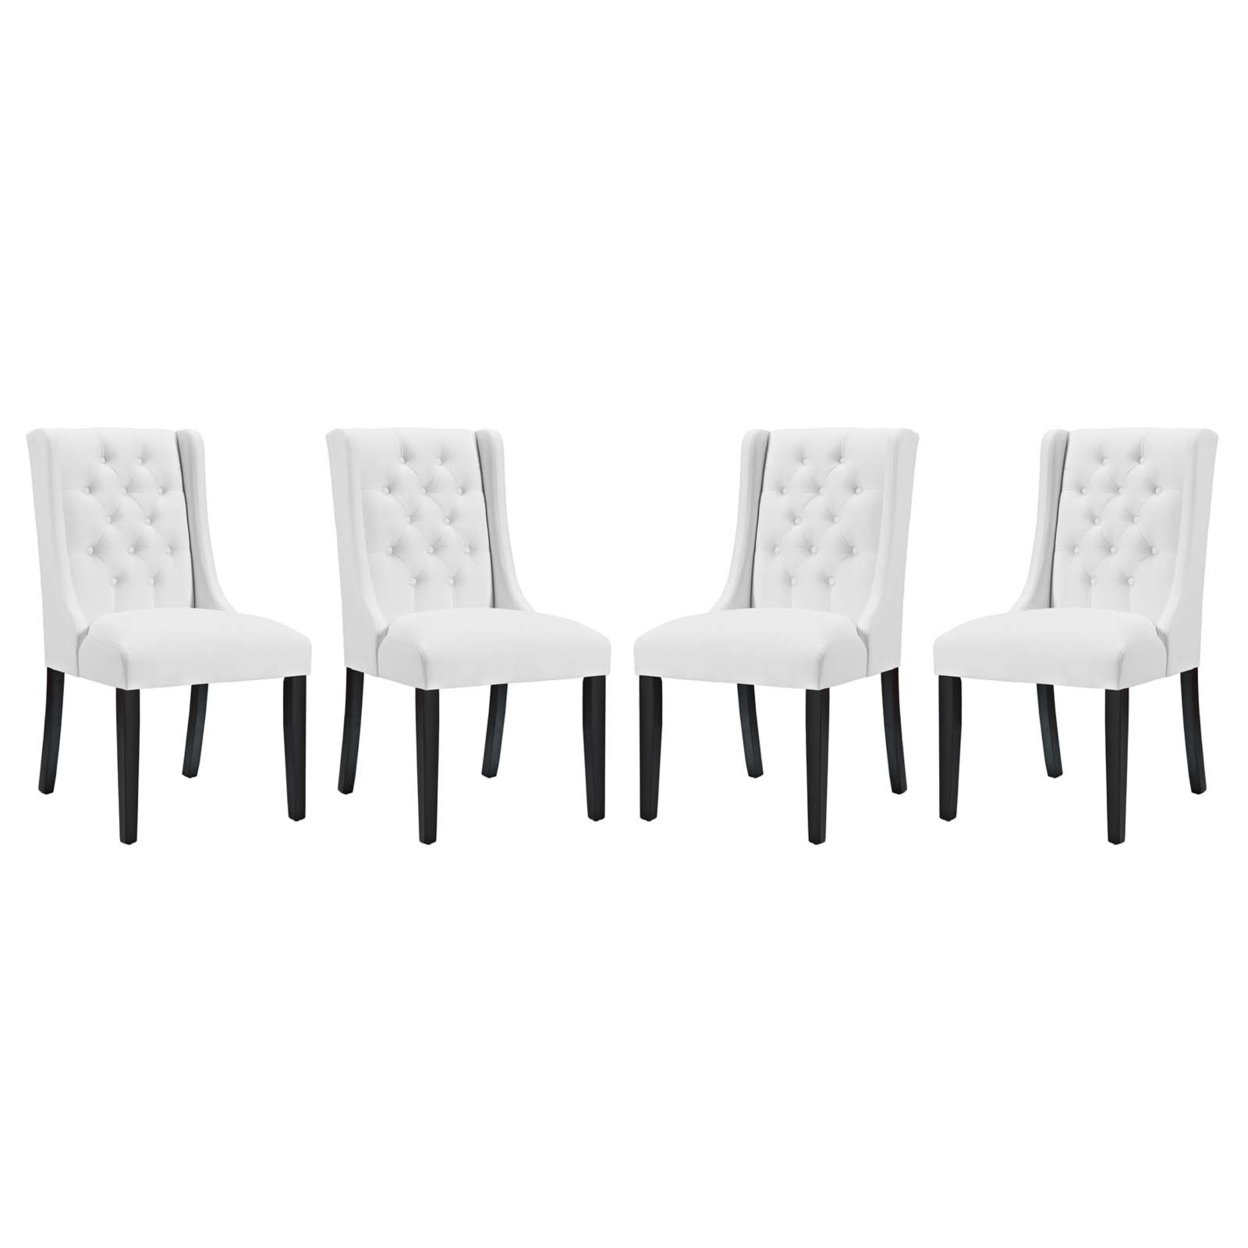 Baronet Dining Chair Vinyl Set Of 4, White